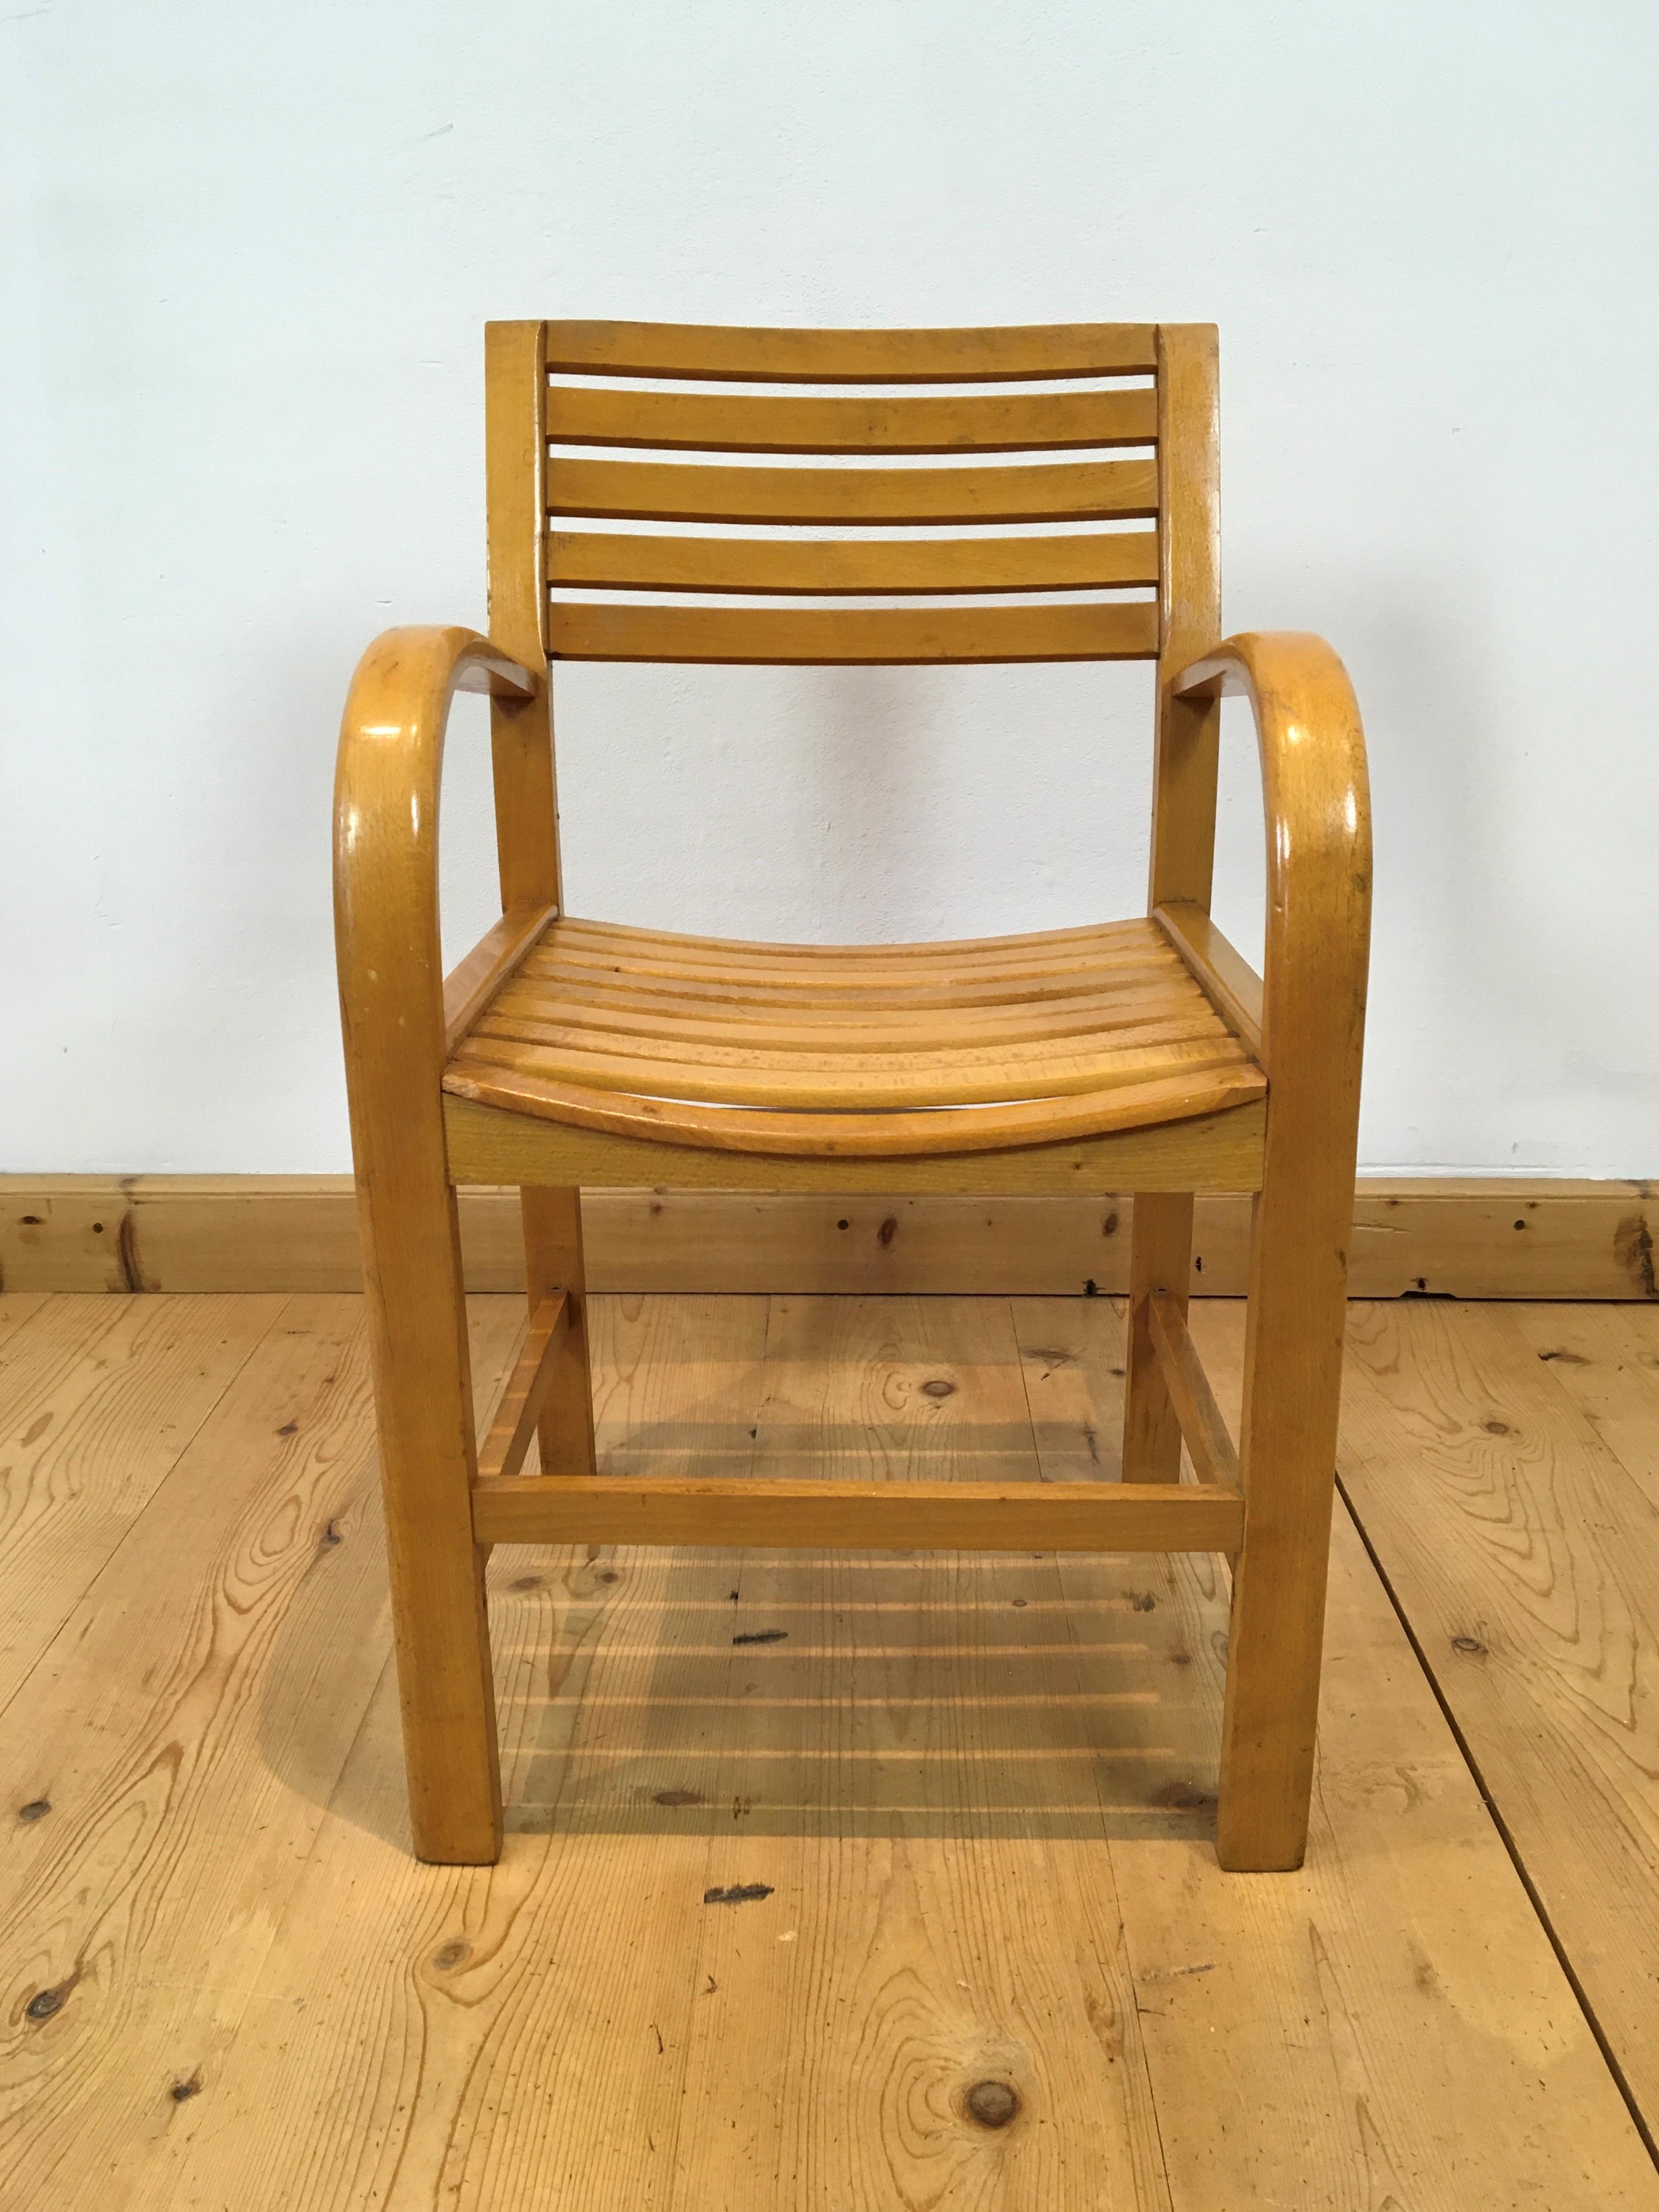 Fauteuil en bois courbé de Torck Belgium. 
Torck est connu comme fabricant de jouets et de meubles. 
C'est une belle chaise en forme avec des accoudoirs en bois courbé. 
Tampon - signé au dos par Torck ;

Cette chaise date d'environ 1950 -1960